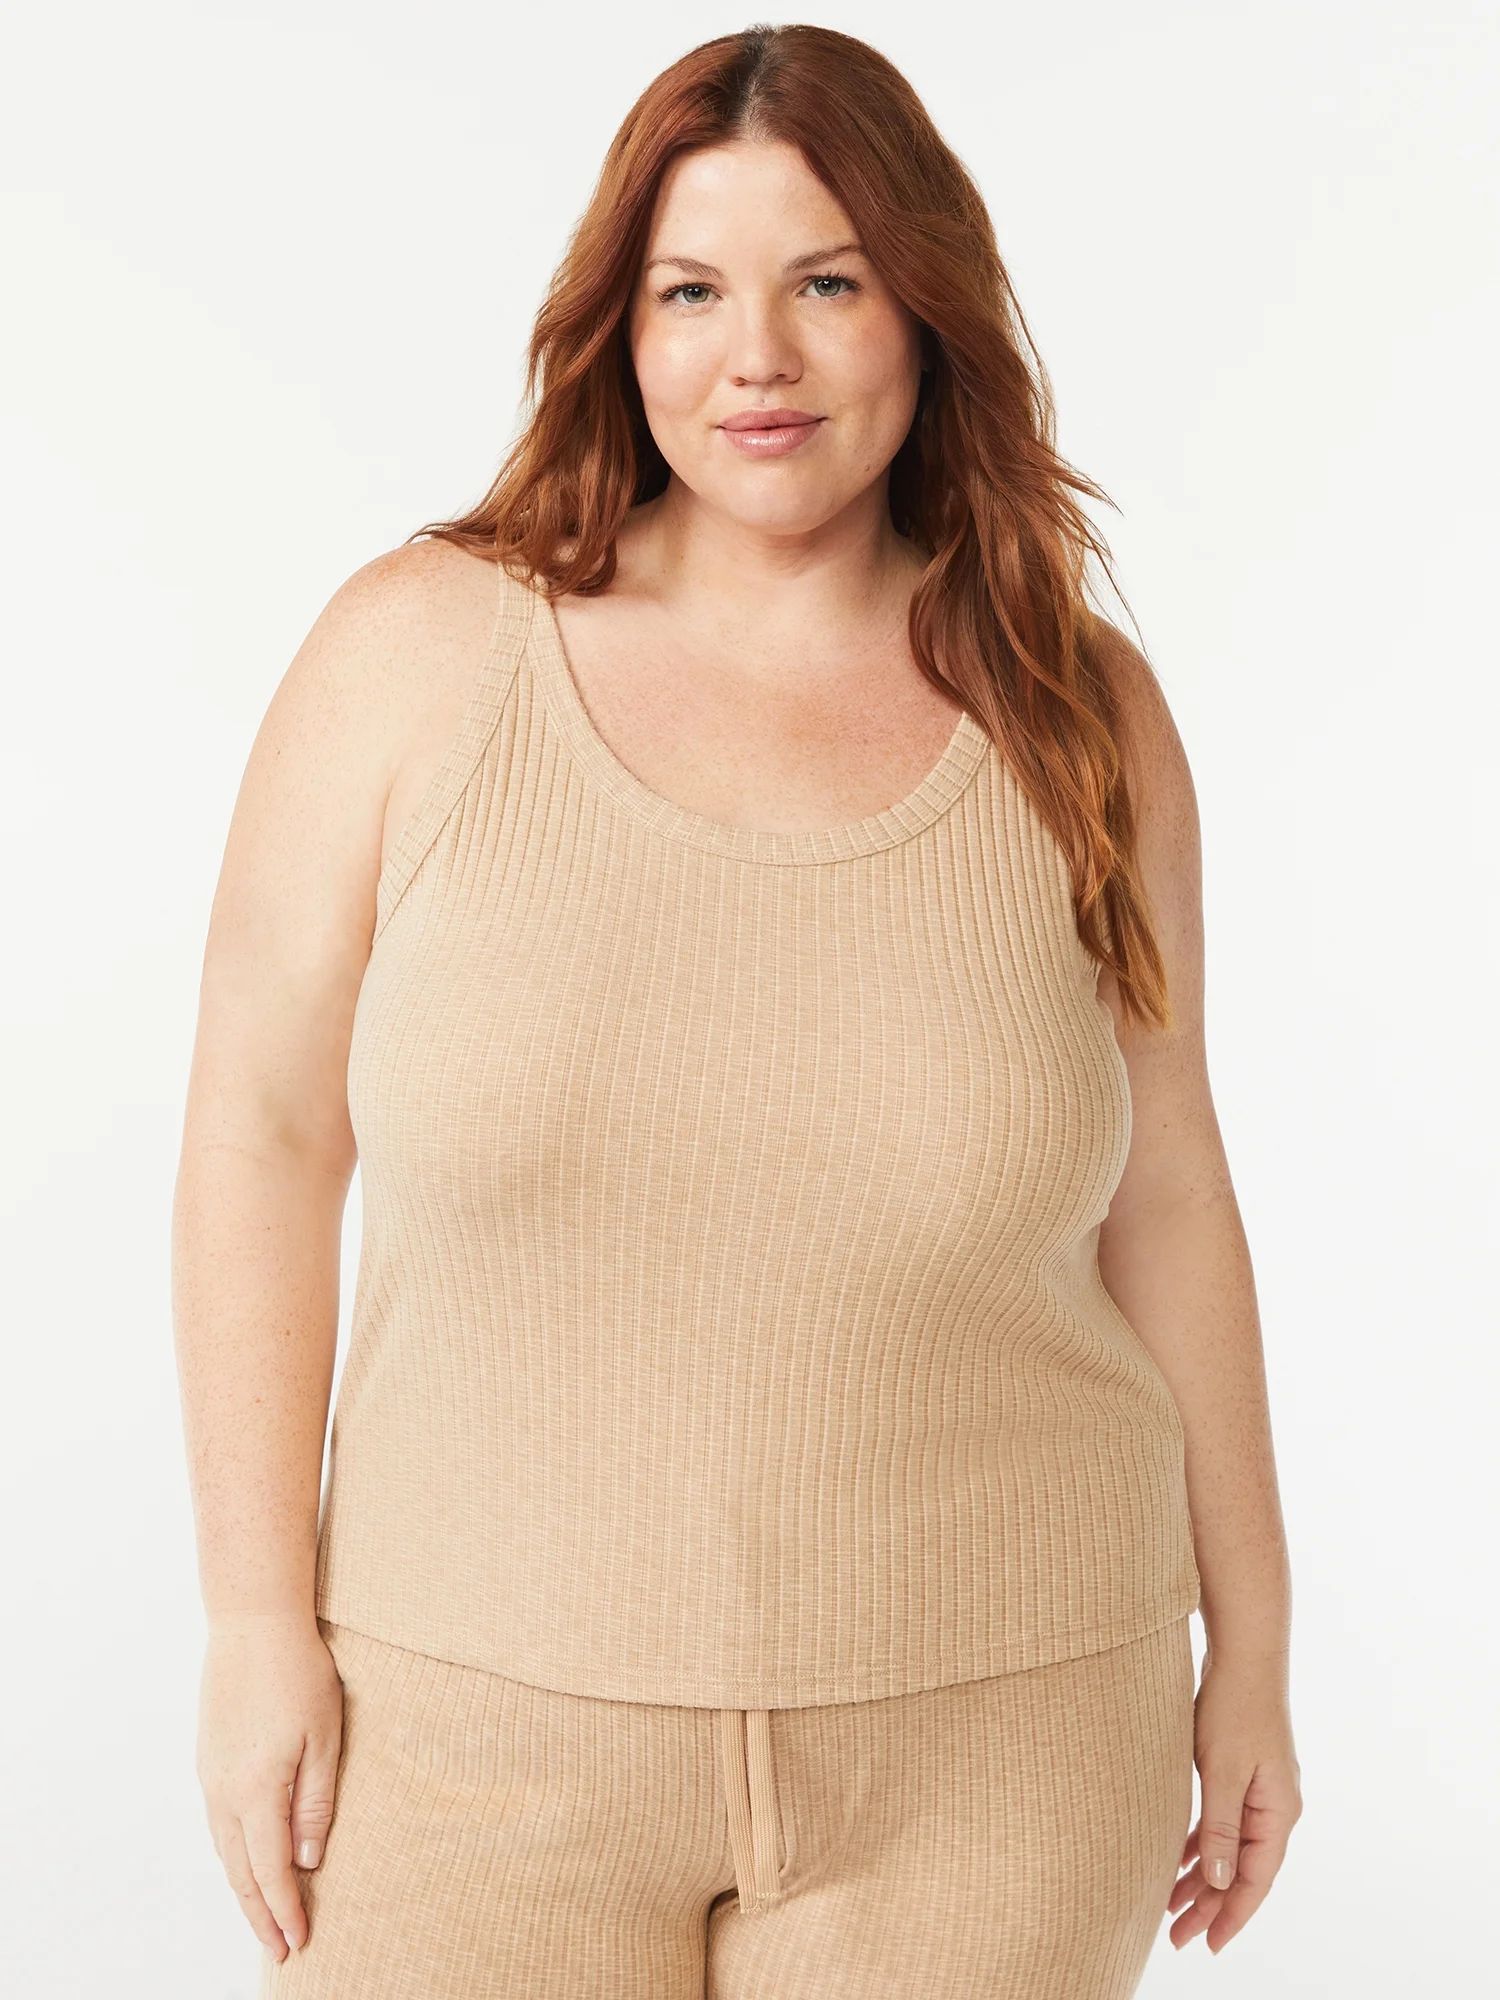 Joyspun Women's Hacci Knit Tank Top, Sizes S to 3X | Walmart (US)